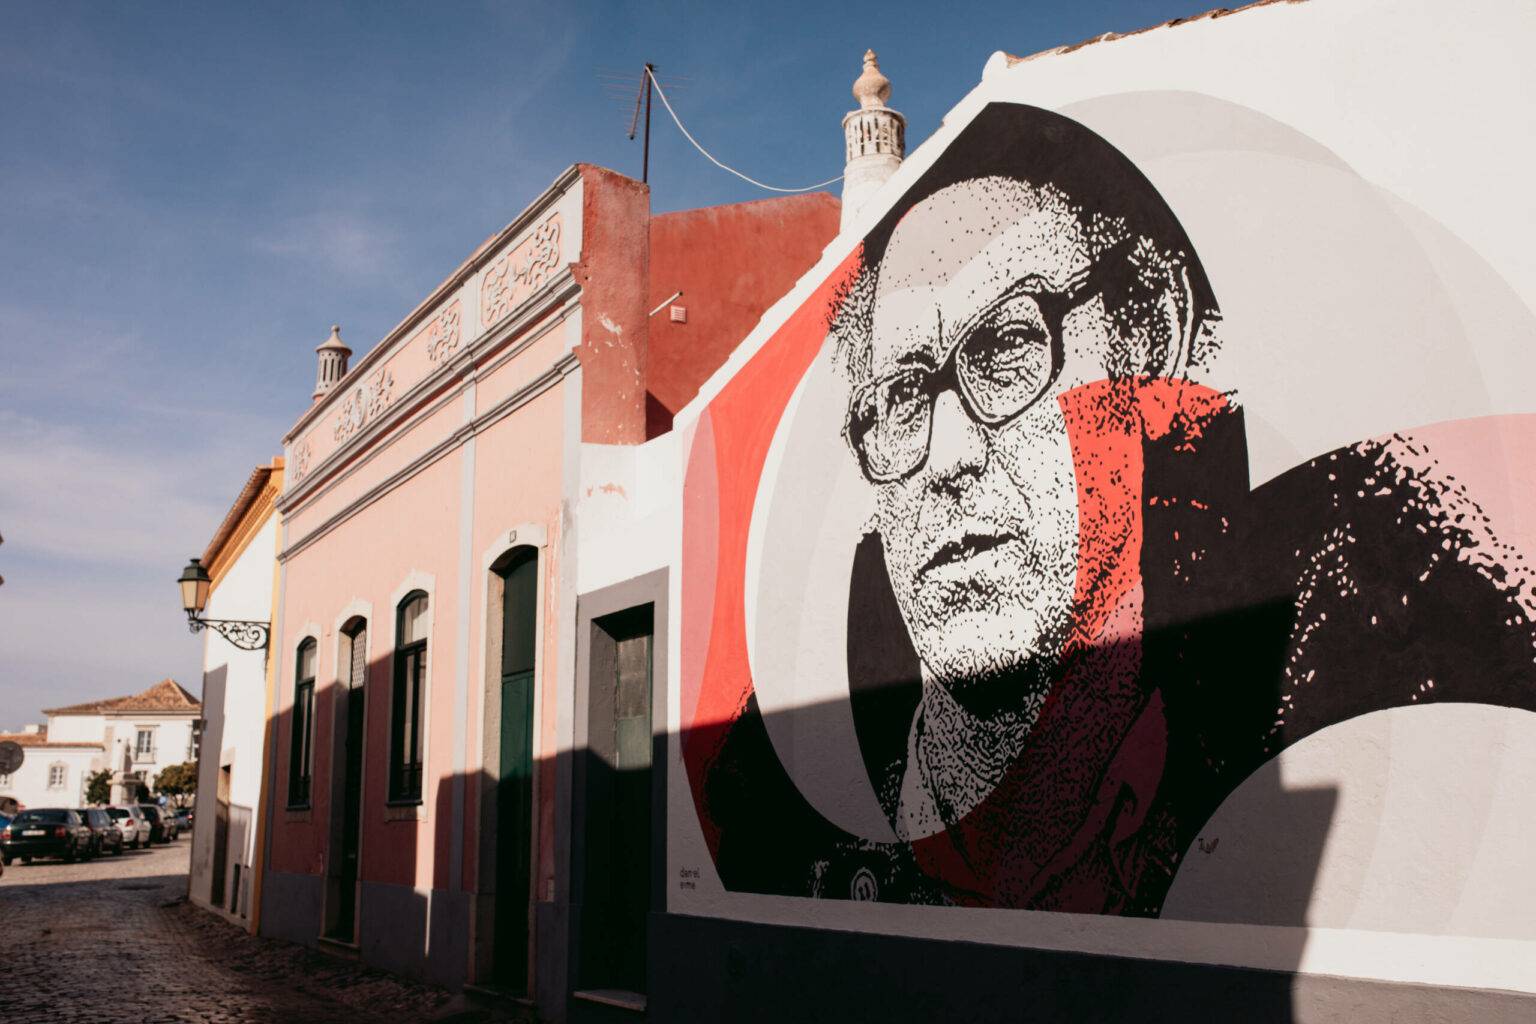 Kunst in der Altstadt: Das Mural von Daniel Eime zeigt den Sänger und Liedermacher Zeca Afonso, dessen Lied „Grândola, Vila Morena“ 1974 den Startschuss für die Nelkenrevolution lieferte.